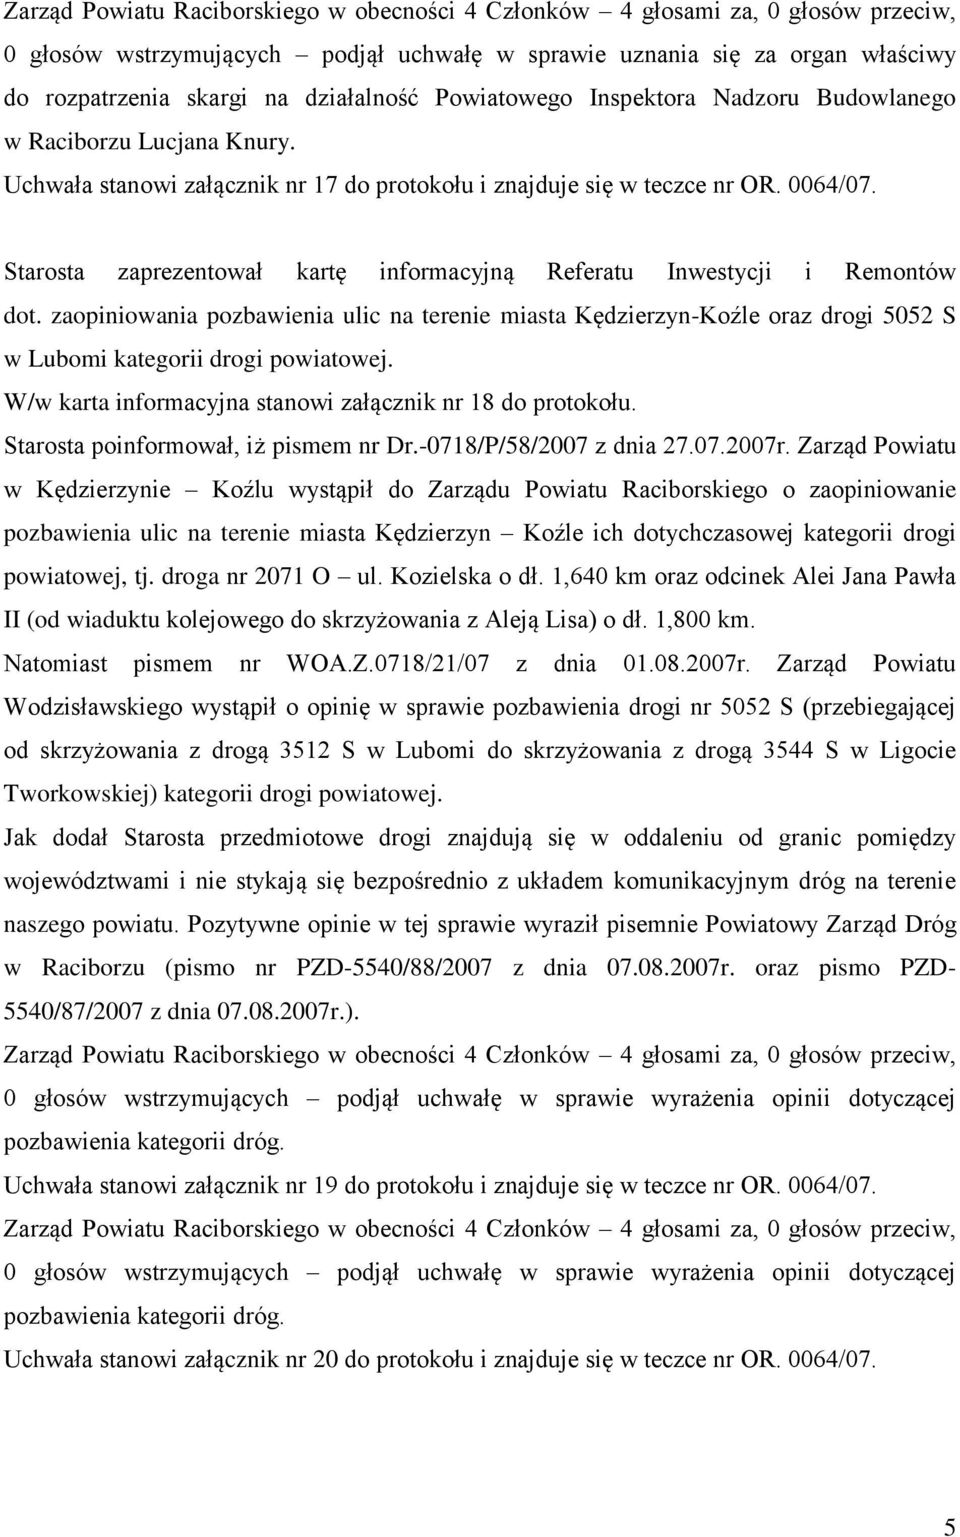 Starosta zaprezentował kartę informacyjną Referatu Inwestycji i Remontów dot. zaopiniowania pozbawienia ulic na terenie miasta Kędzierzyn-Koźle oraz drogi 5052 S w Lubomi kategorii drogi powiatowej.